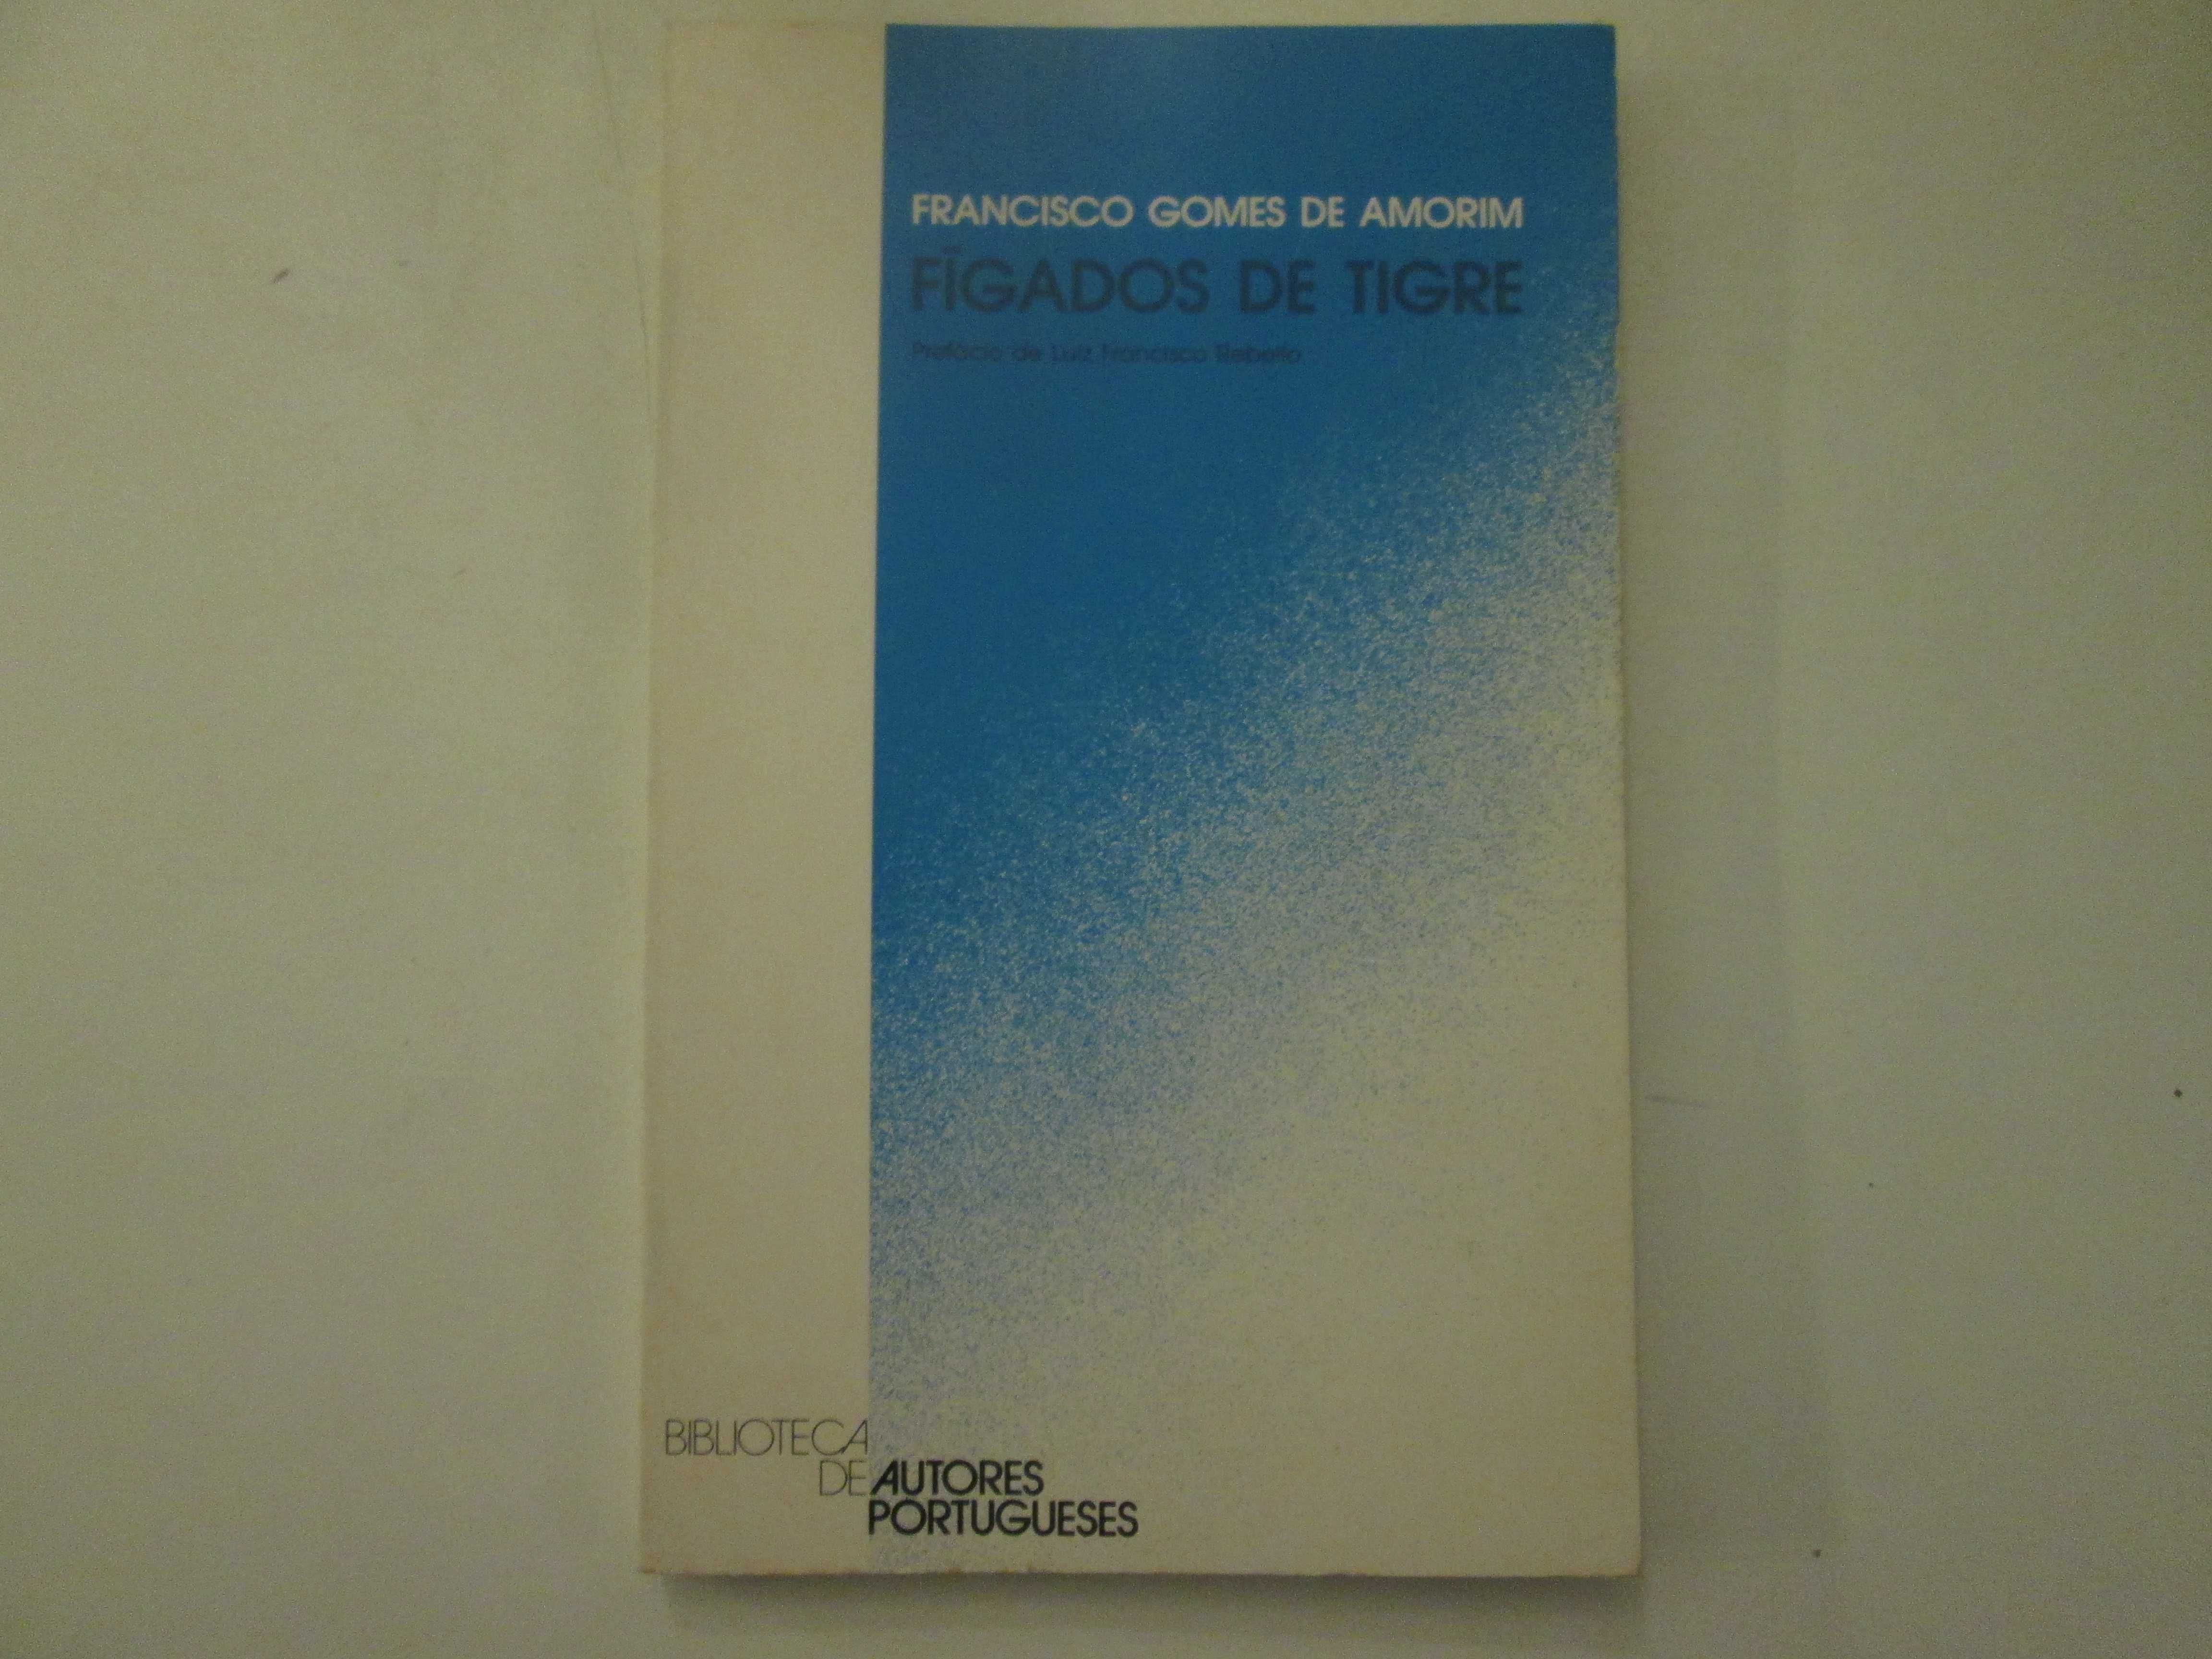 Fígados de tigre- Francisco Gomes de Amorim